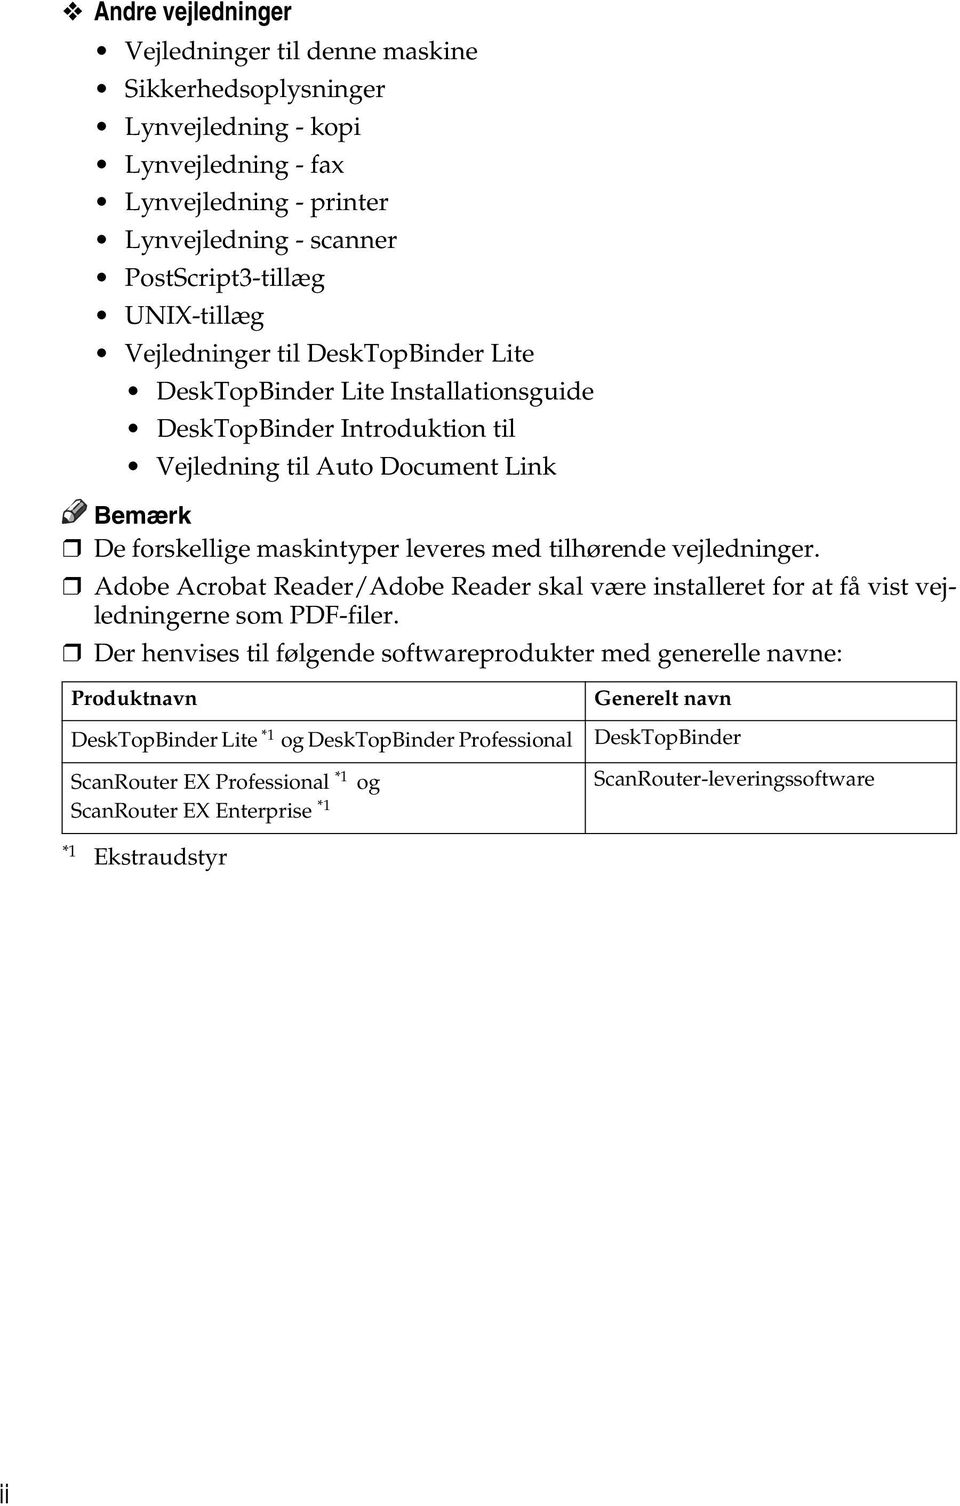 tilhørende vejledninger. Adobe Acrobat Reader/Adobe Reader skal være installeret for at få vist vejledningerne som PDF-filer.